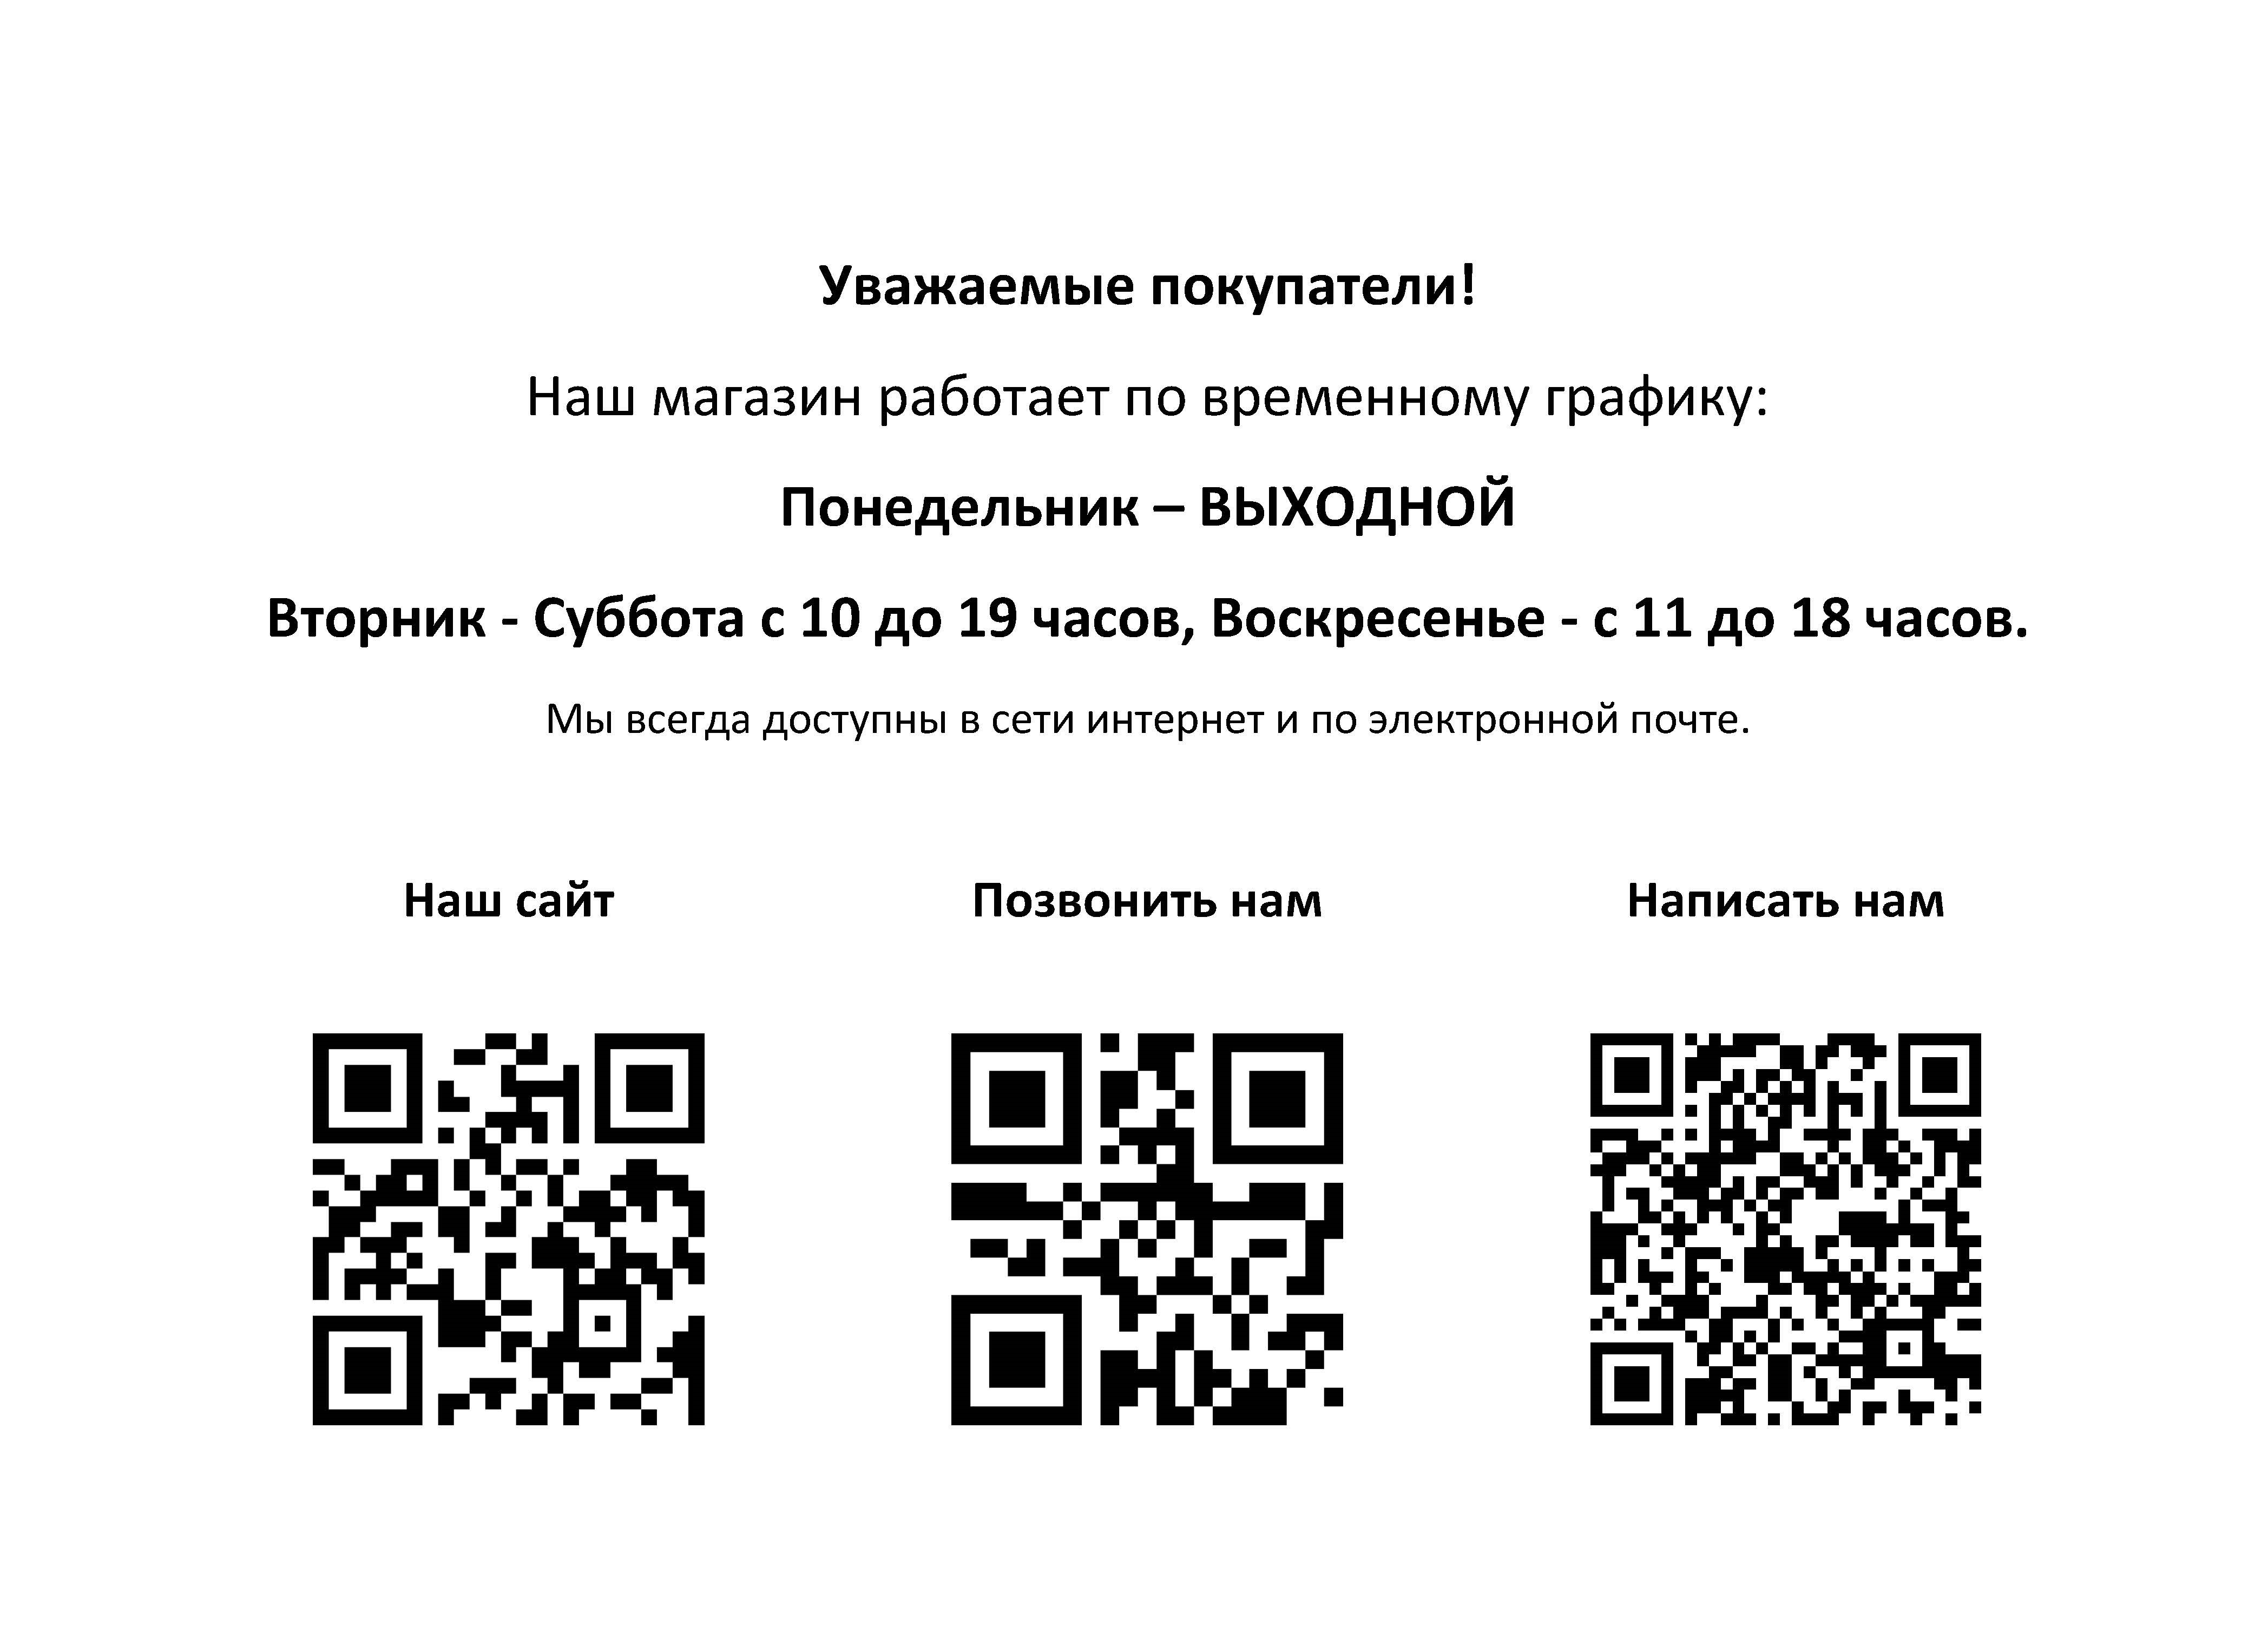 Изменения в работе розничного магазина с 13.01.2023